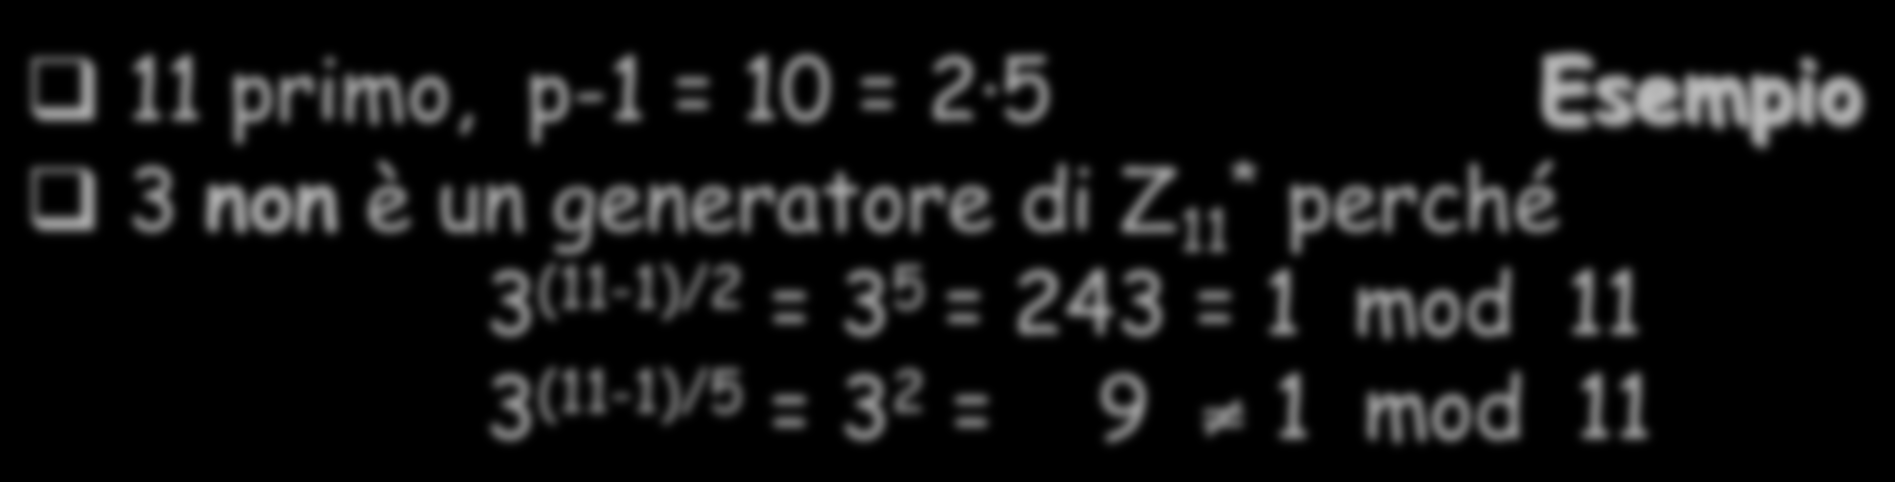 Scelta di un generatore p primo, p-1 = p e 1 1 p2 e 2 pk e k g (p-1)/p 1 1 mod p g è un generatore di Z p.